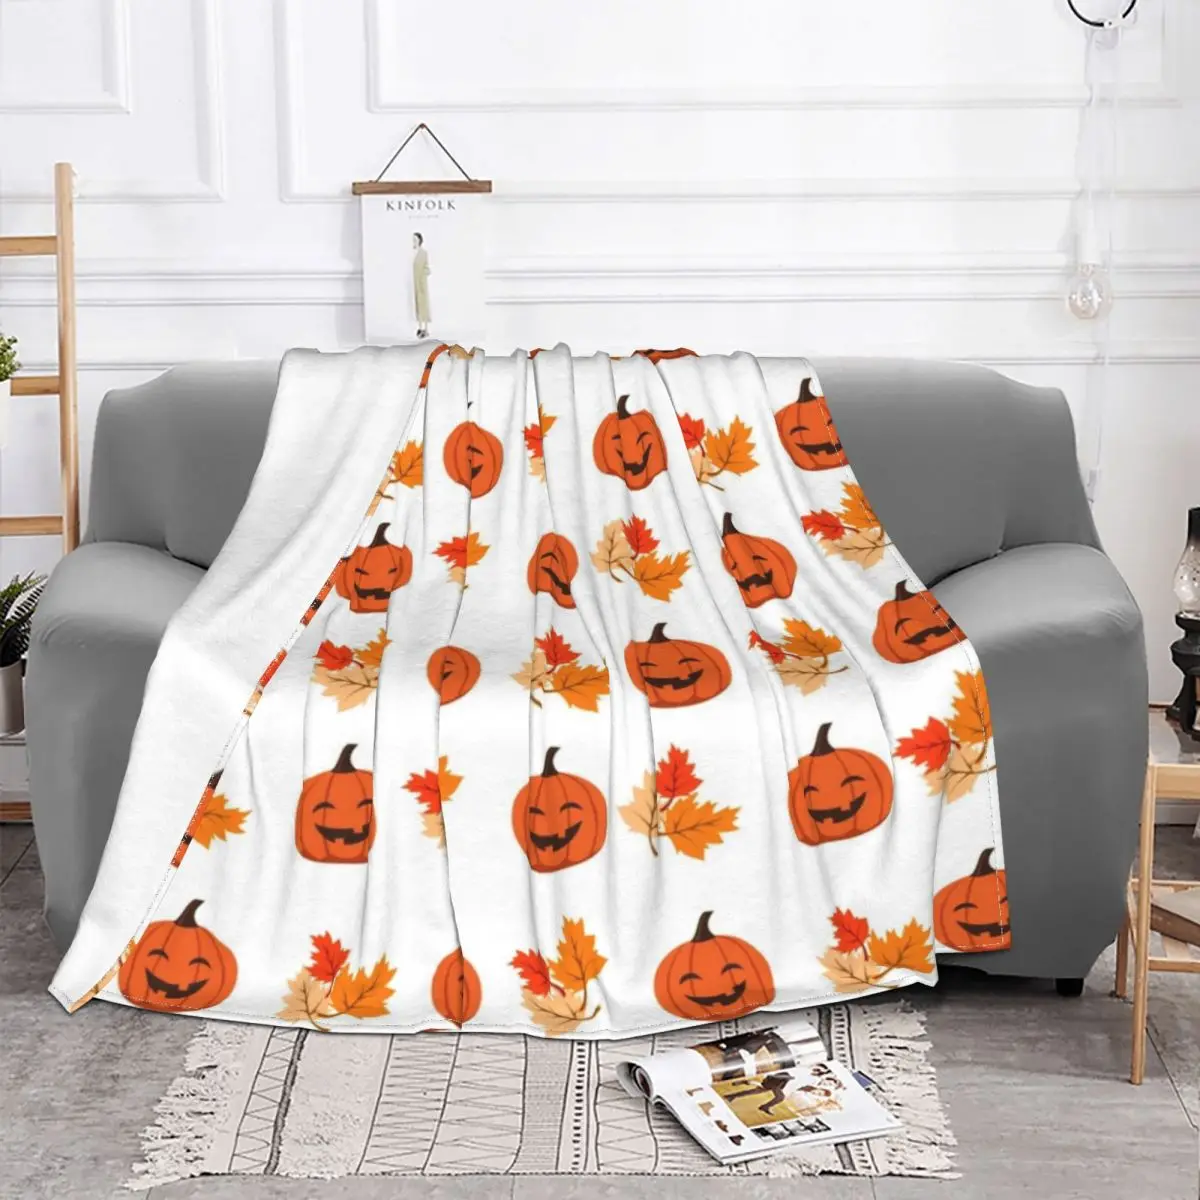 

Одеяло с рисунком тыквы на Хэллоуин, флисовое текстильное украшение, искусственное многофункциональное супертеплое покрывало для кровати, автомобиля, плюшевое тонкое одеяло